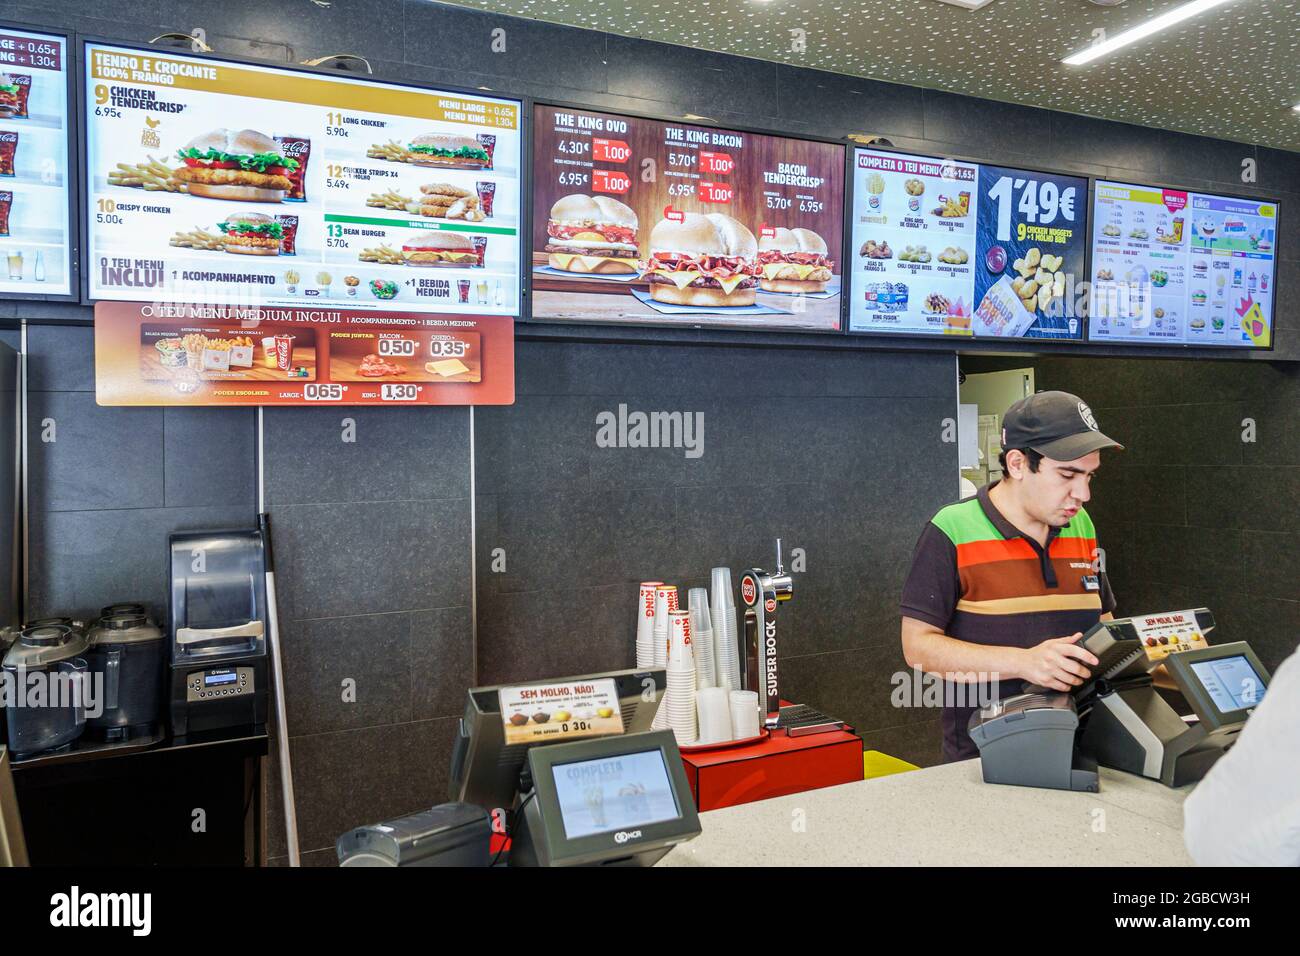 Burger king menu hi-res stock photography and images - Alamy